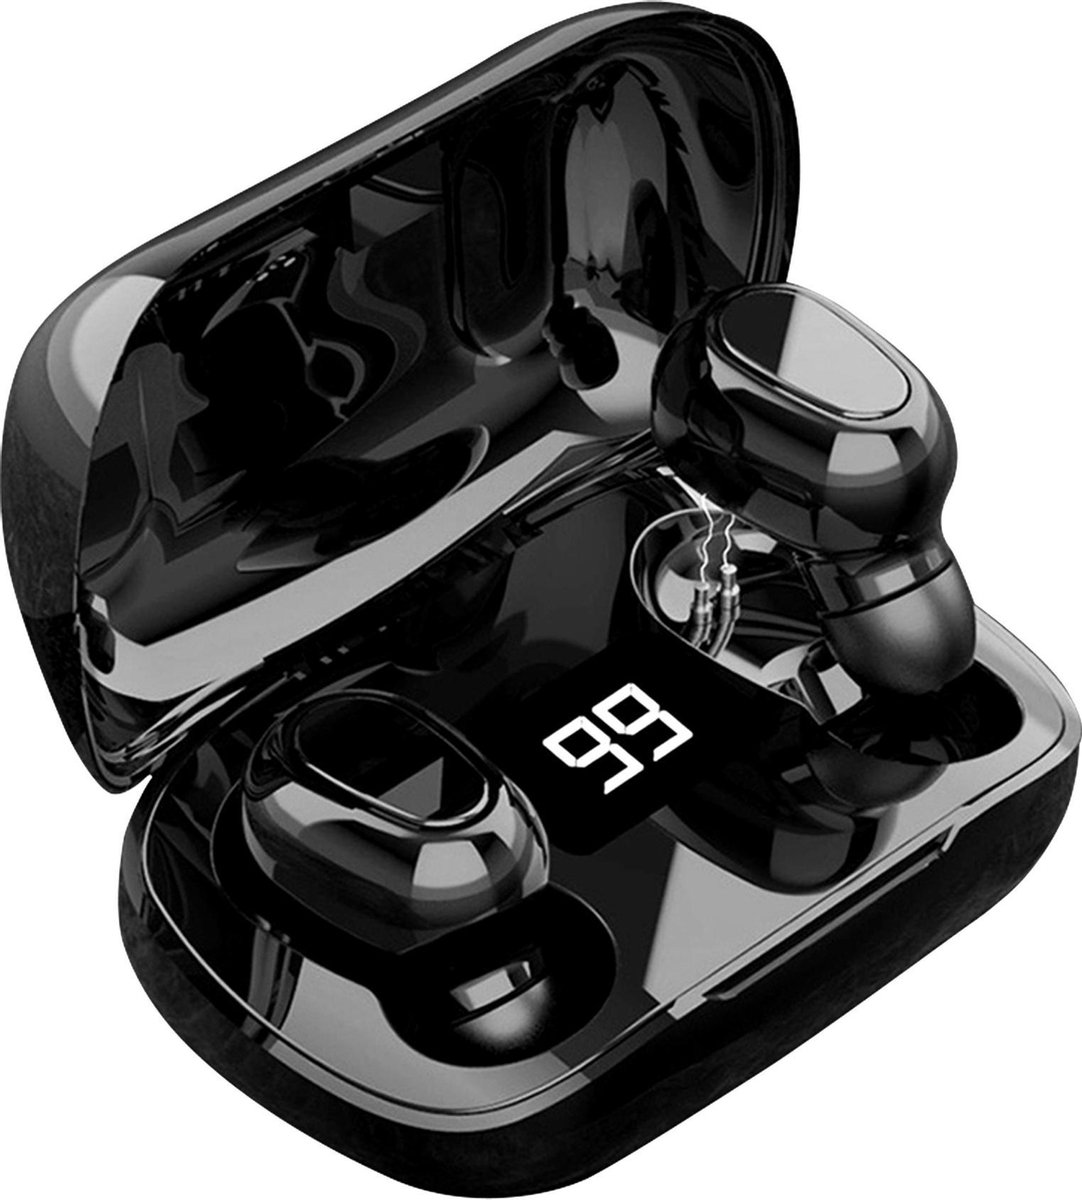 Draadloze Oordopjes - Oortjes Draadloos - In ear Oordopjes - Draadloze oortjes Bluetooth - Earbuds met Extra Bas Geschikt voor Sport Hardlopen IOS - Android - Techrie